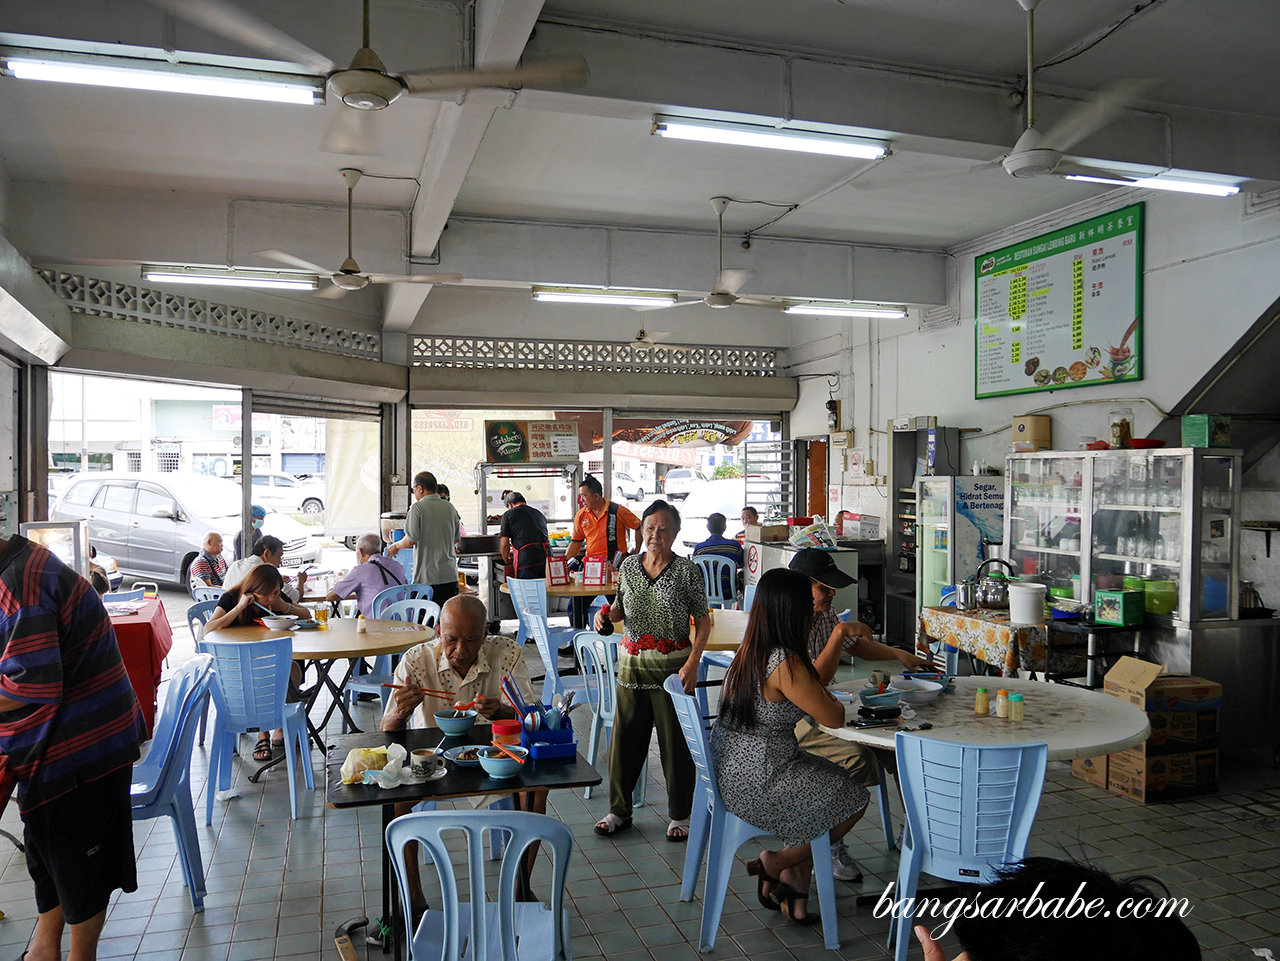 Fuss-free set up at Restoran Sungai Lembing Baru in Kuantan